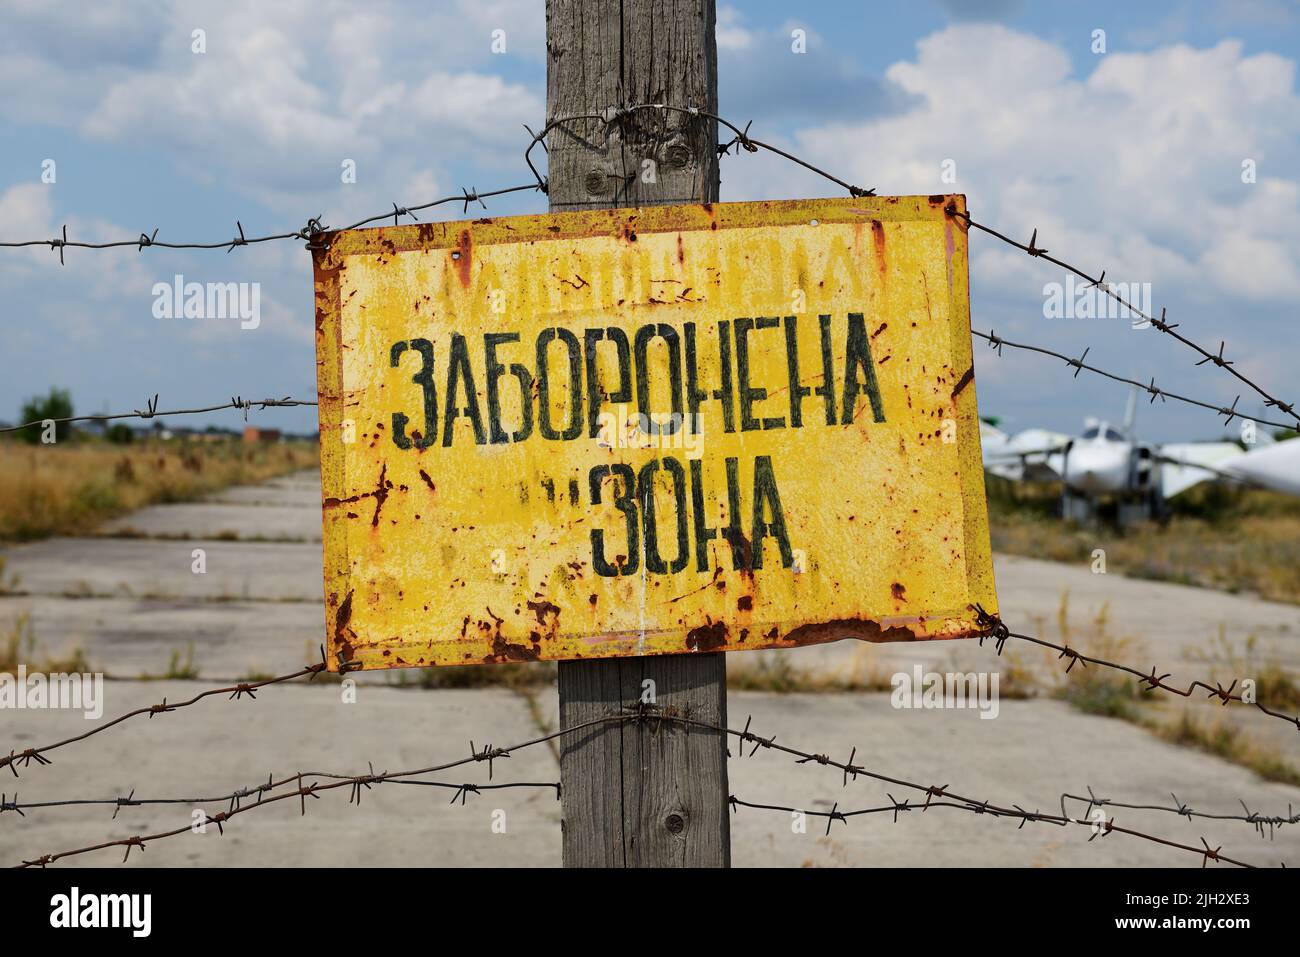 BILA TSERKVA, UCRANIA - AGOSTO de 25: El signo Restringido Area está en el idioma ucraniano y ver en el ucraniano Sukhoi Su-24 supersonic All-We desmontado Foto de stock